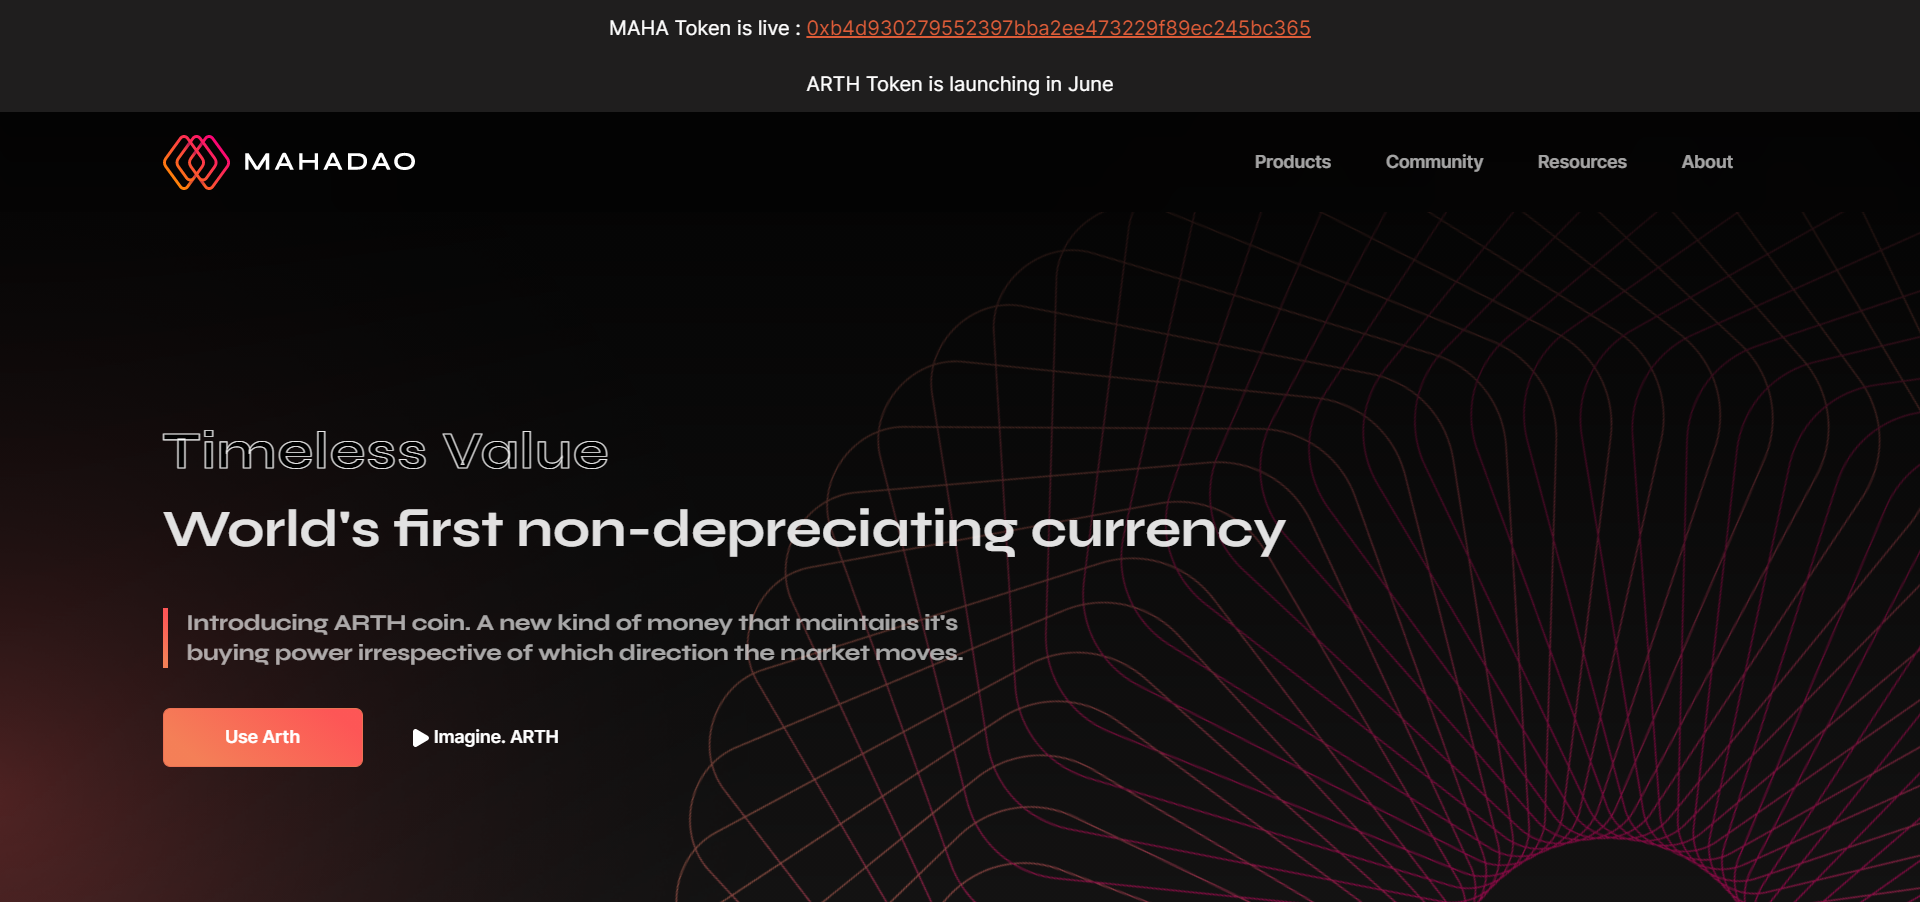 MahaDAO introduces ARTH valuecoin